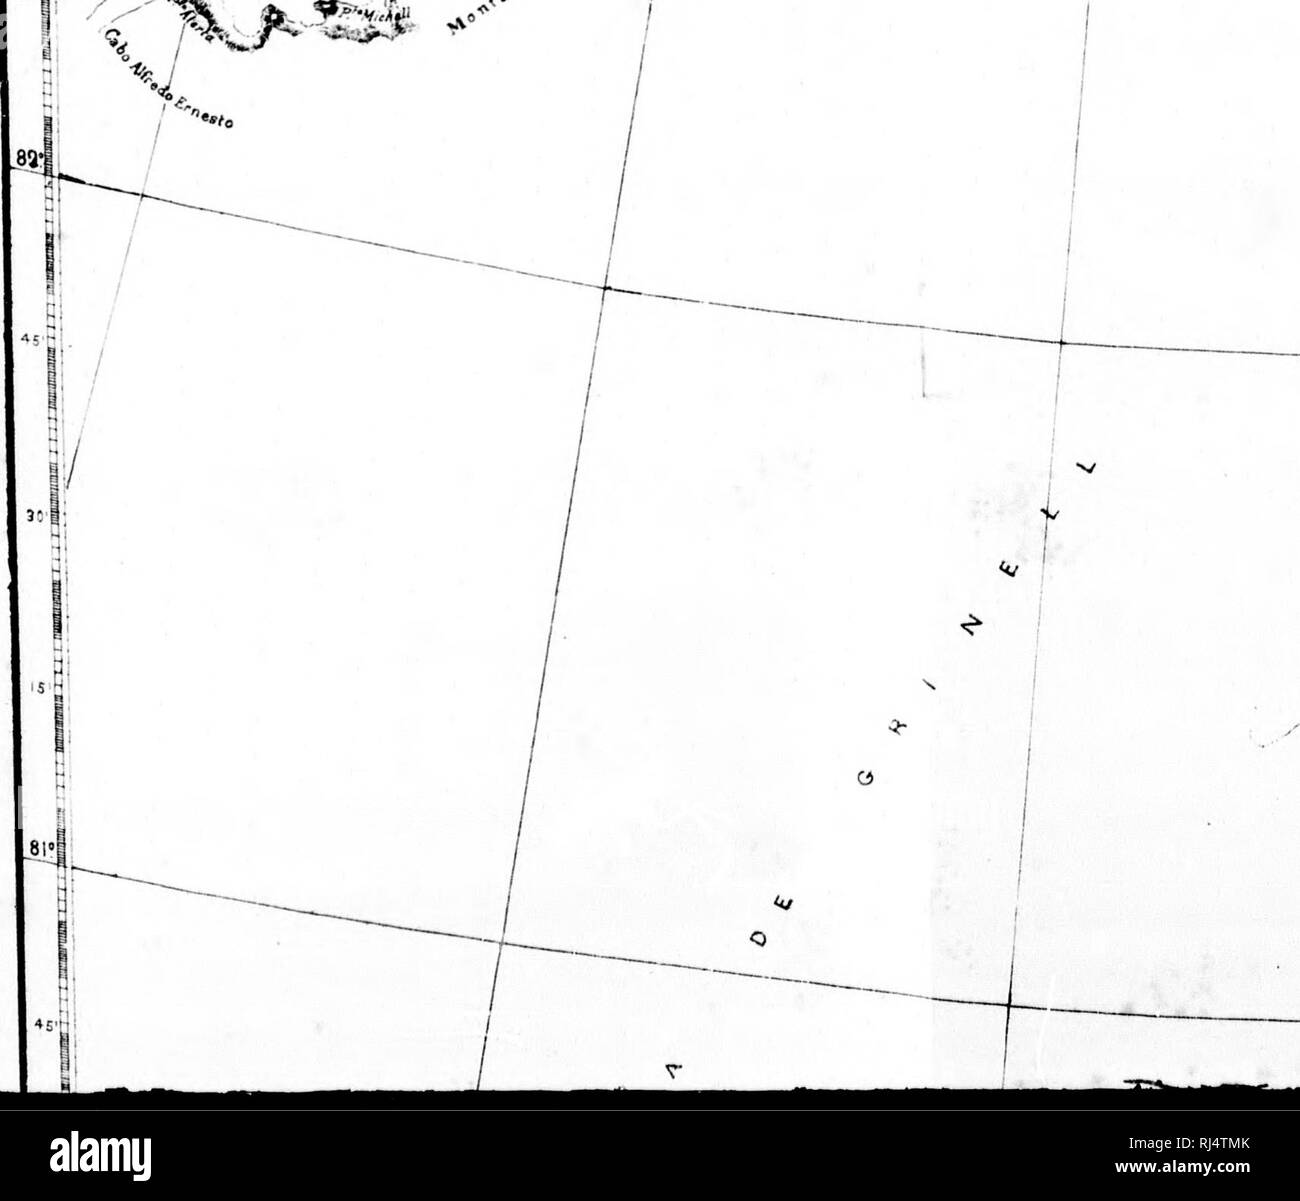 . Viajes al Polo Norte por el CapitÃ¡n Nares con Los buques de la Marina britanica el Real "Alert" y el "Entdeckung" (1875-1876) y por le Arzt Nordenskiold auf El "Vega" (1879-1880) [microform]. Alert (Schiff); Entdeckung (Schiff); Alerte (Navire); Entdeckung (Navire); Naturgeschichte; Baron. &Lt;Â" tayt^ â¢âo** ââ ^. Ti'" 30 "St. Â°-/c^Â"^/. Bitte beachten Sie, dass diese Bilder aus gescannten Seite Bilder, die digital für die Lesbarkeit verbessert haben mögen - Färbung und Aussehen dieser Abbildungen können nicht Perfekt ähneln den extrahiert werden Stockfoto